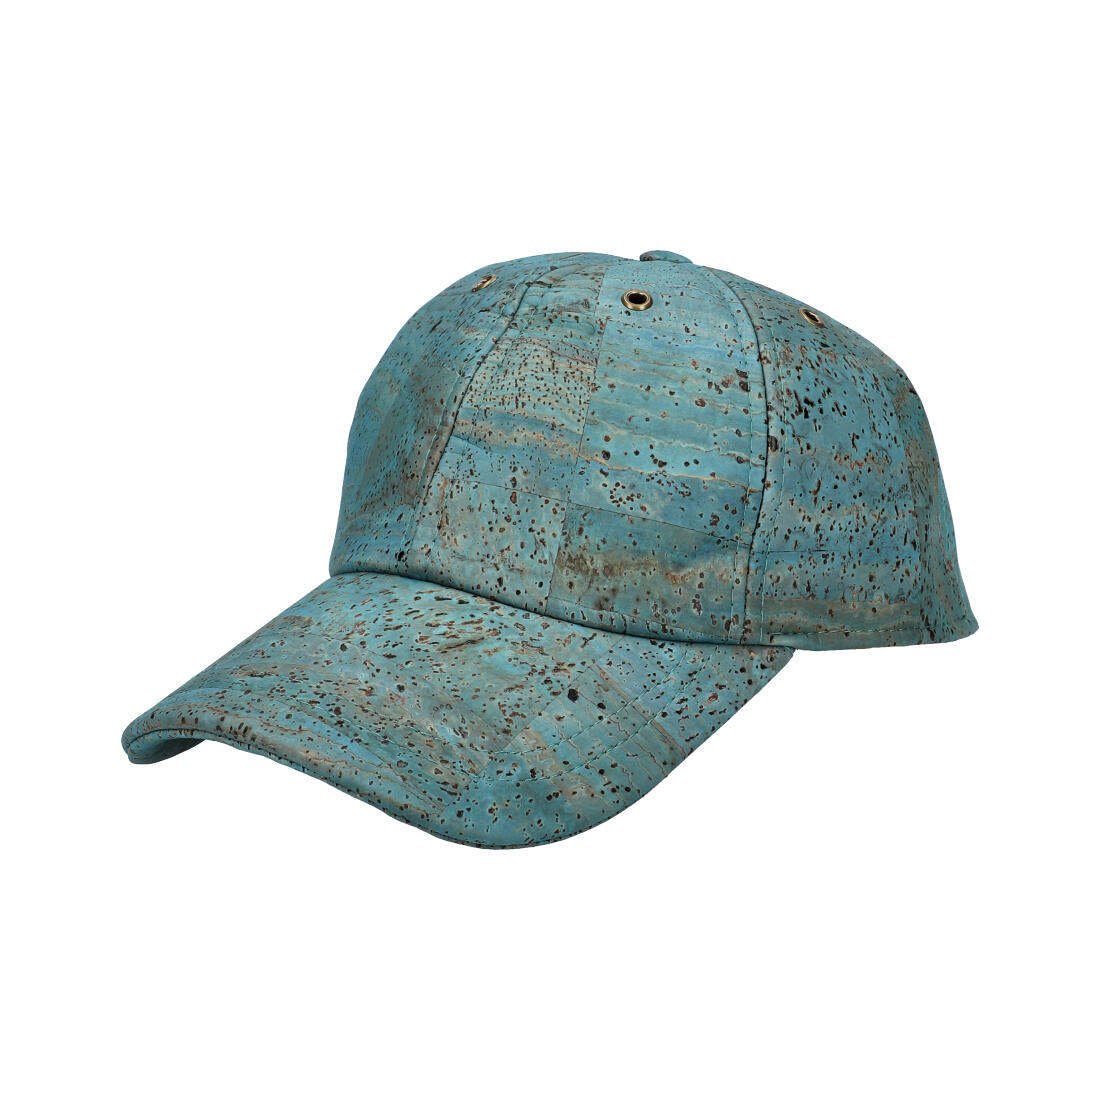 Chapéu de cortiça QMV30 8 BLUE ModaServerPro